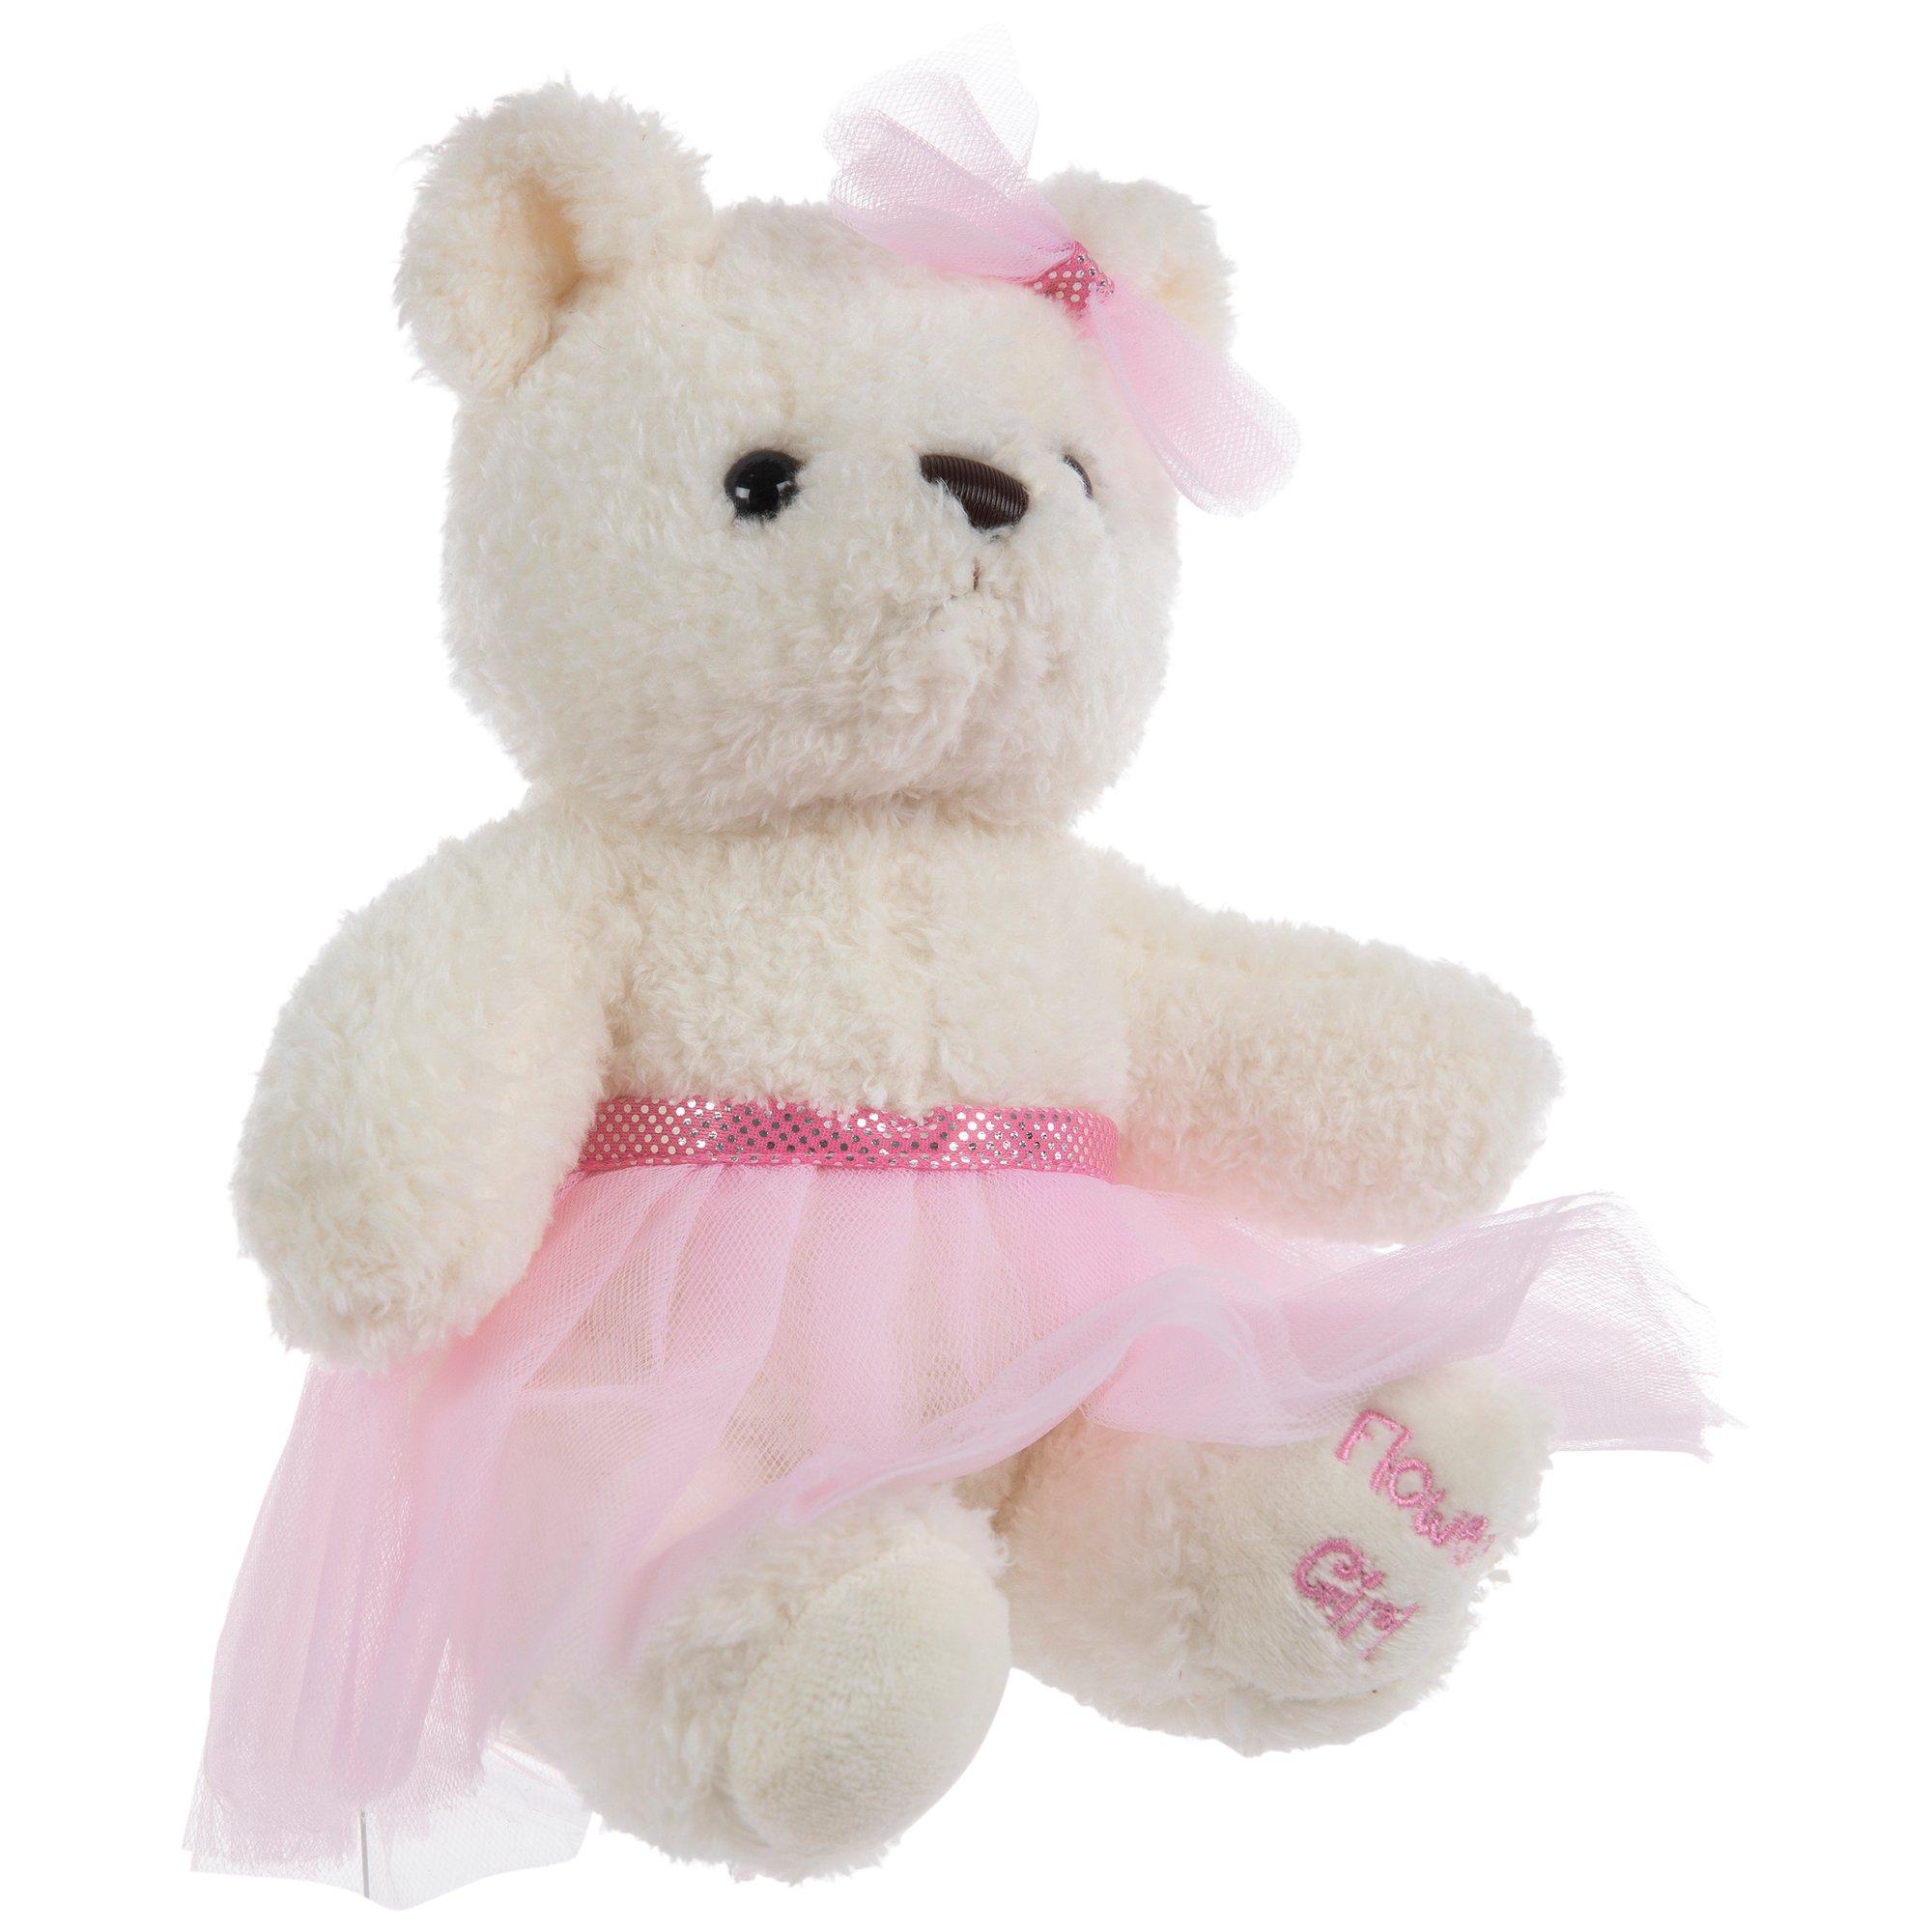 Pink Teddy Bear, Hobby Lobby